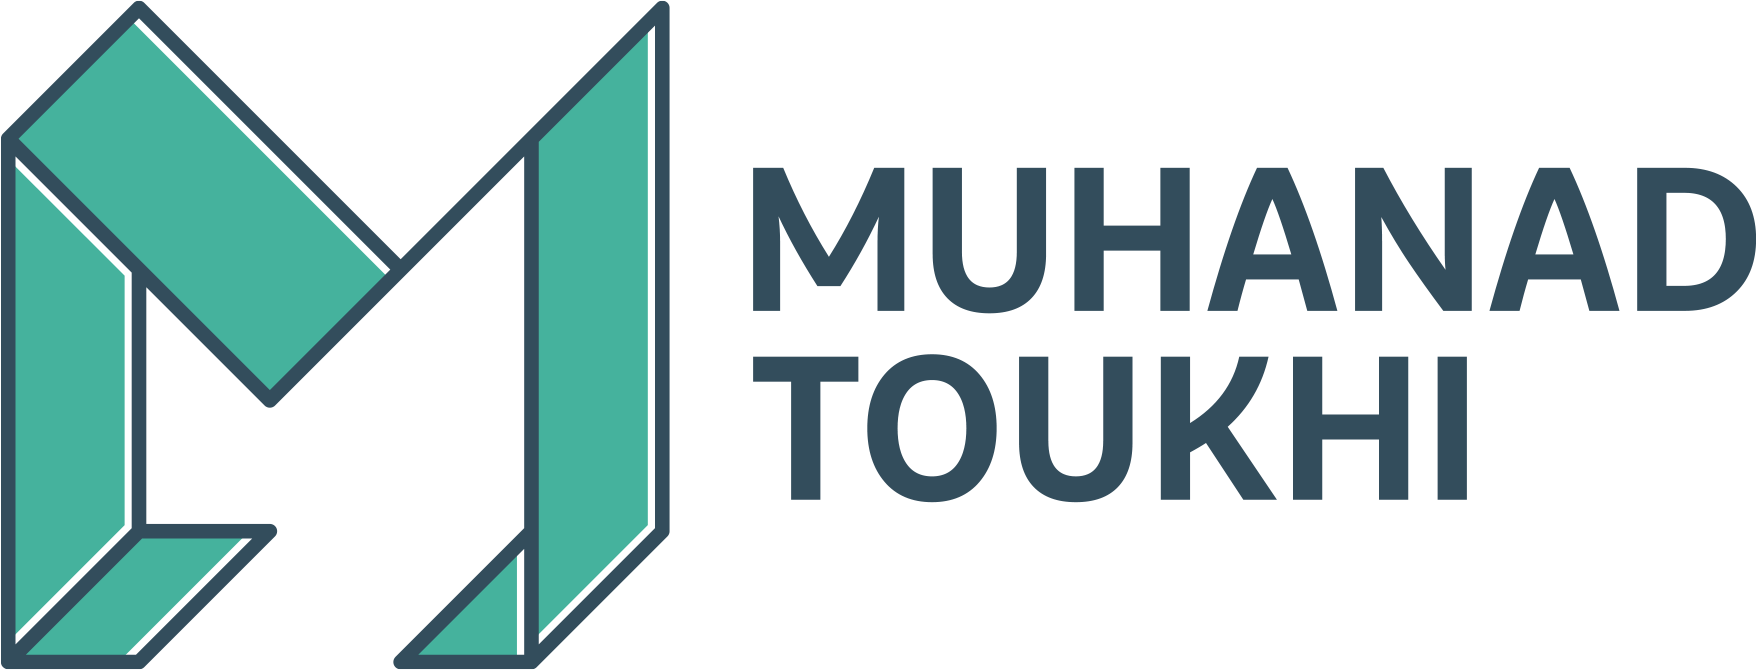 Muhanad Toukhi